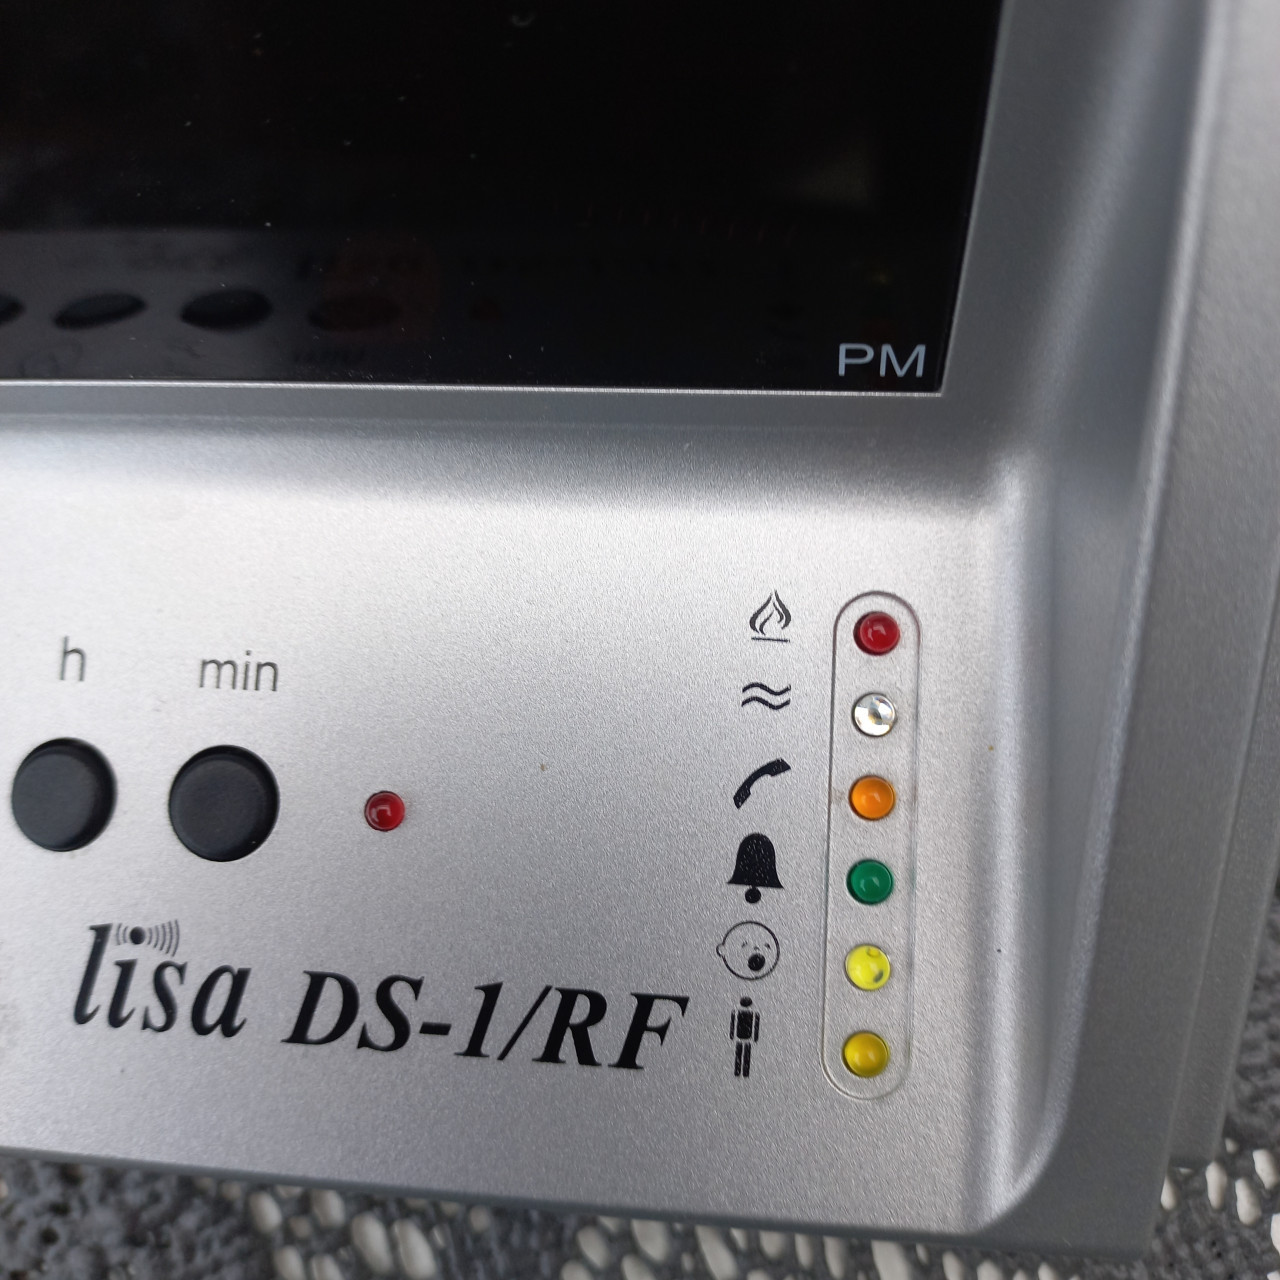 Lisa DS-1/RF Digitale Wekker (zilver)